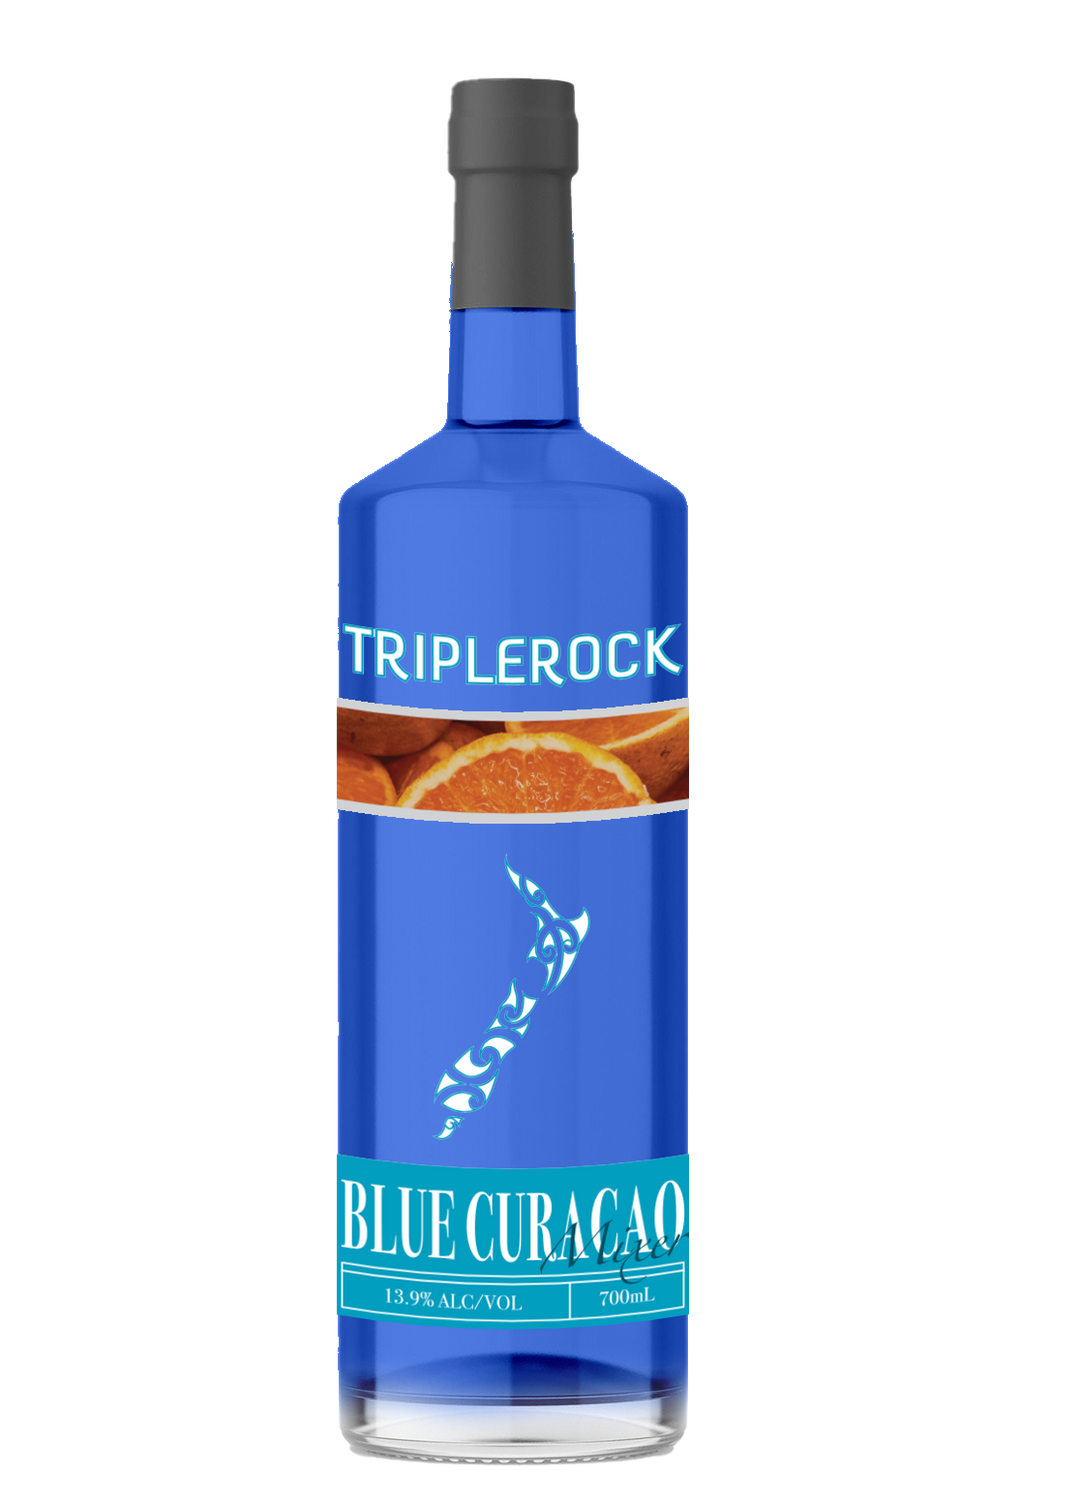 Triplerock Blue Curracao Mixer Liqueurs 700ml x6 Bottles 13.9% ALC/VOL.